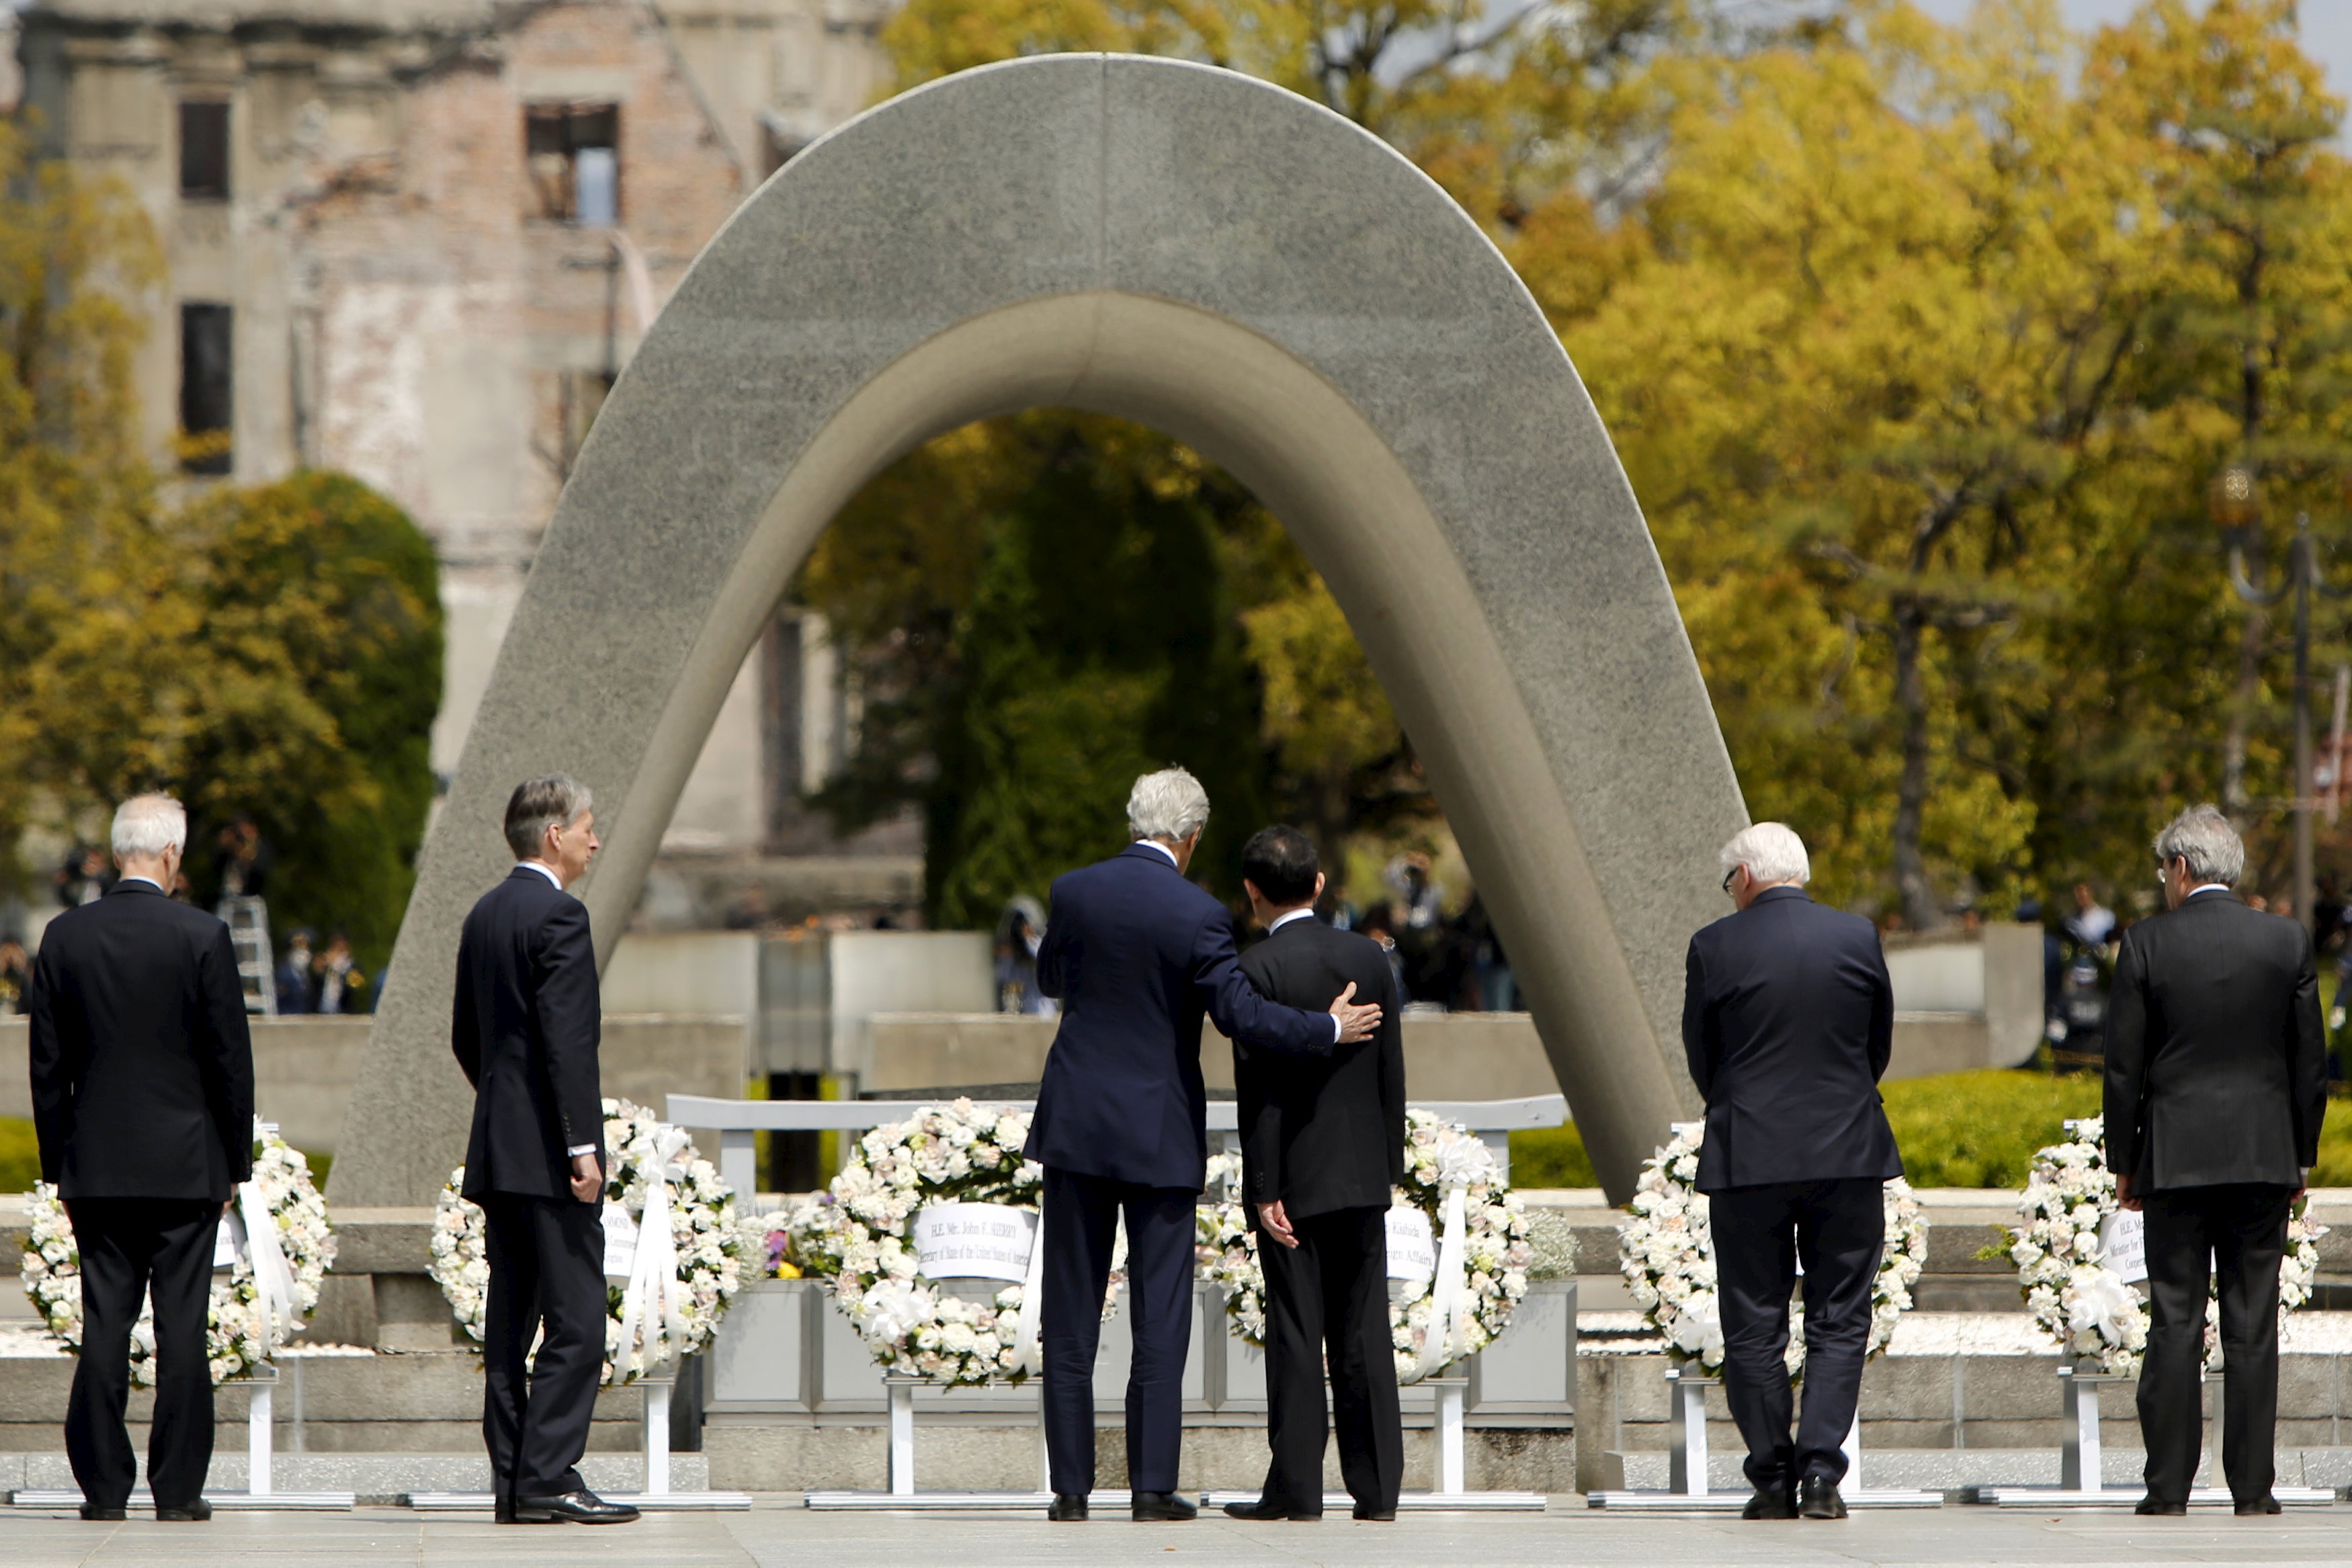 John Kerry visits Hiroshima memorial 7 decades after atomic bomb - CBS News